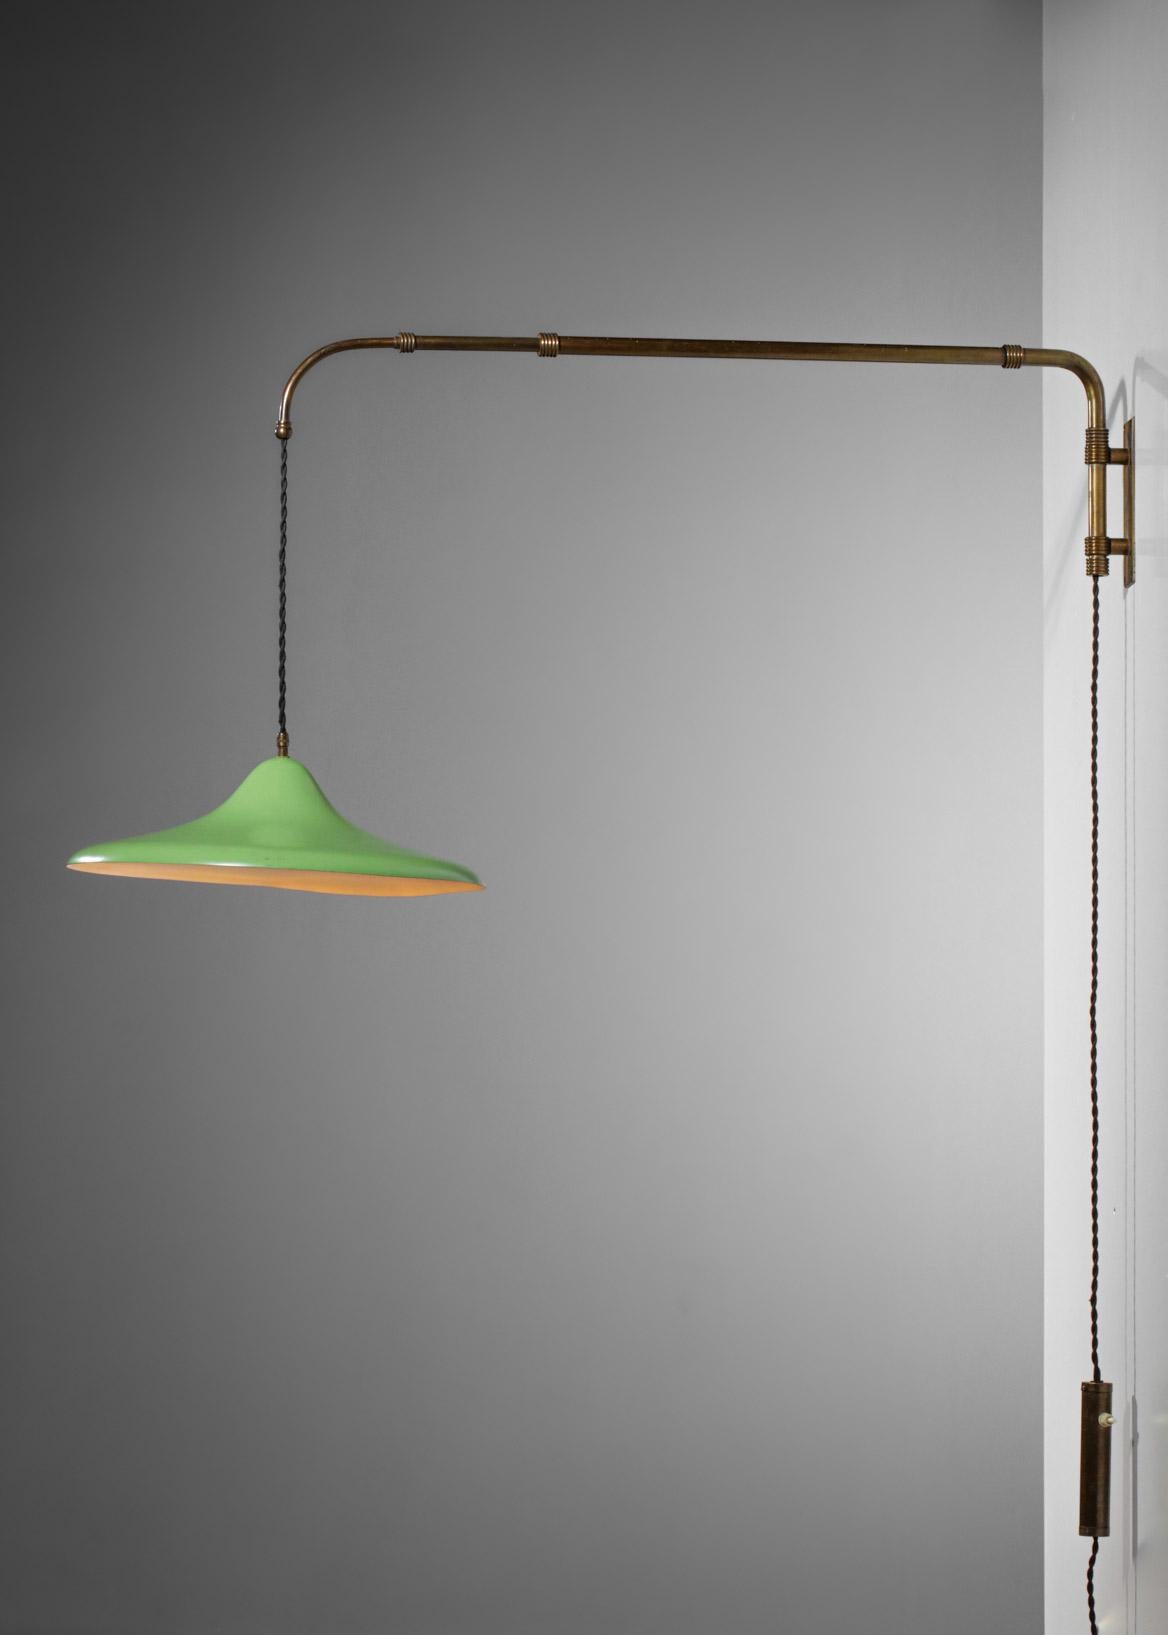 Brass Italian Wall Light by Arredoluce Almond Green Metal 60s Swing E187